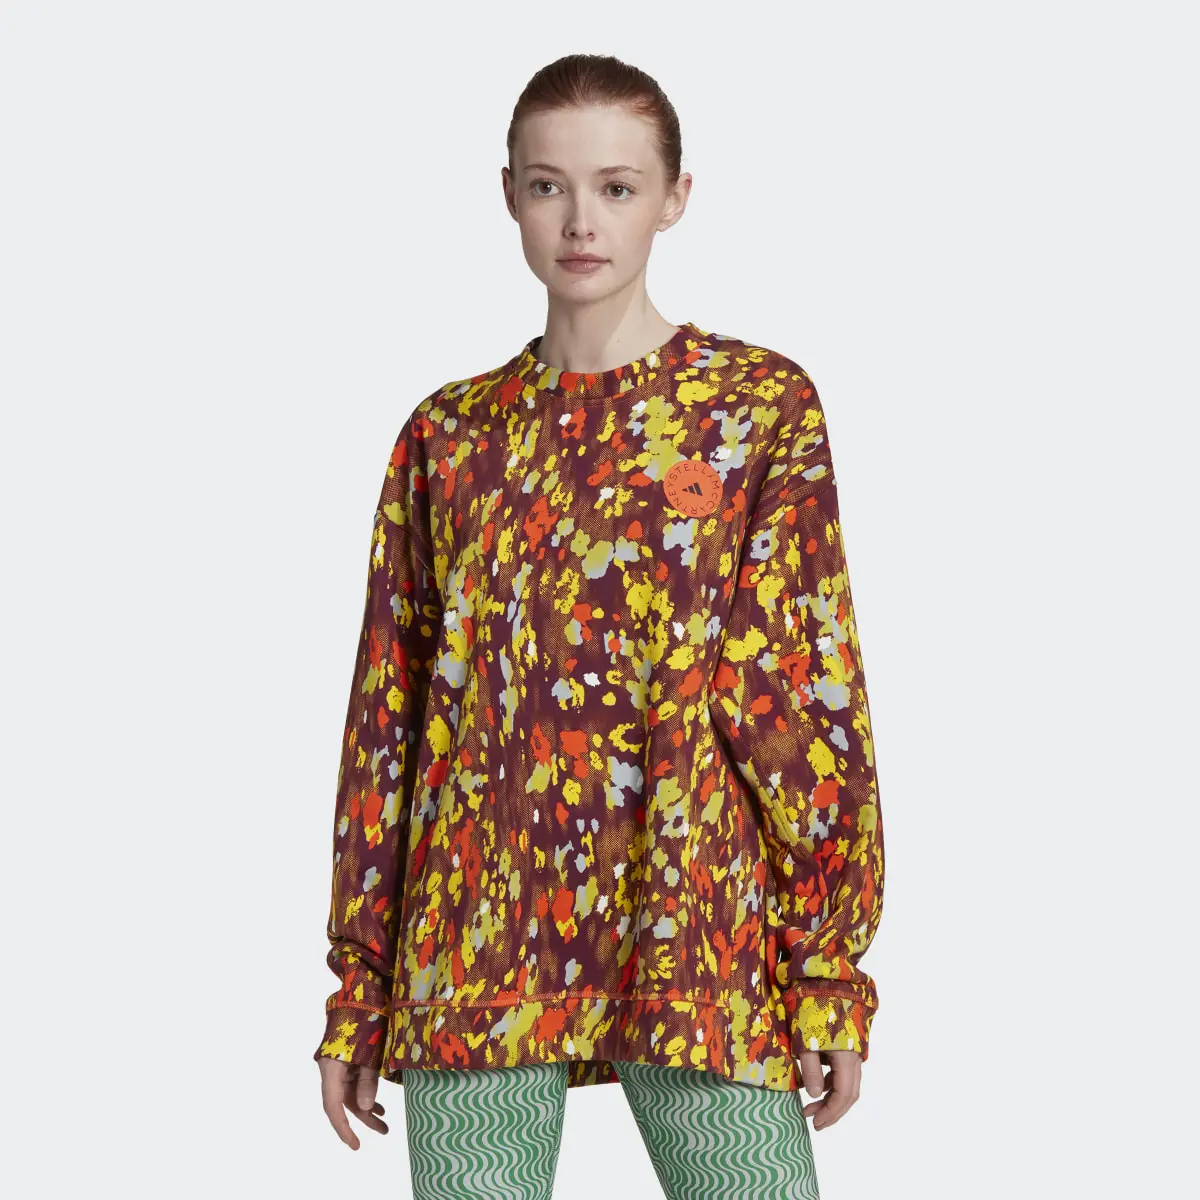 Adidas by Stella McCartney Floral Print Sweatshirt. 2